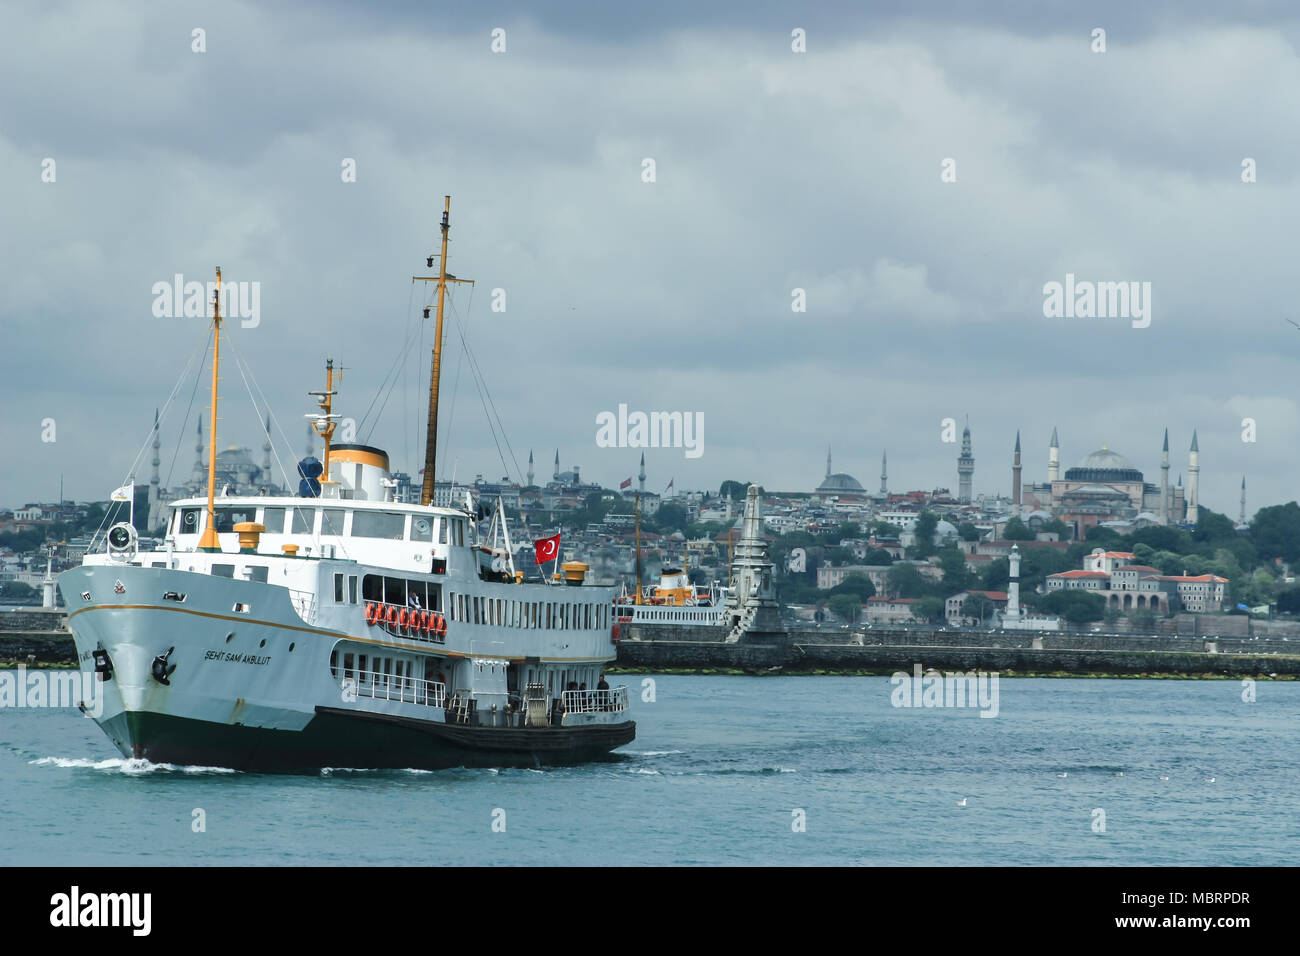 La ferry est le principal lien entre les banlieues d'Istanbul comme Sirkeci et Besiktas qui sont divisées par la rivière Bosphore, Istanbul, Turquie. Banque D'Images